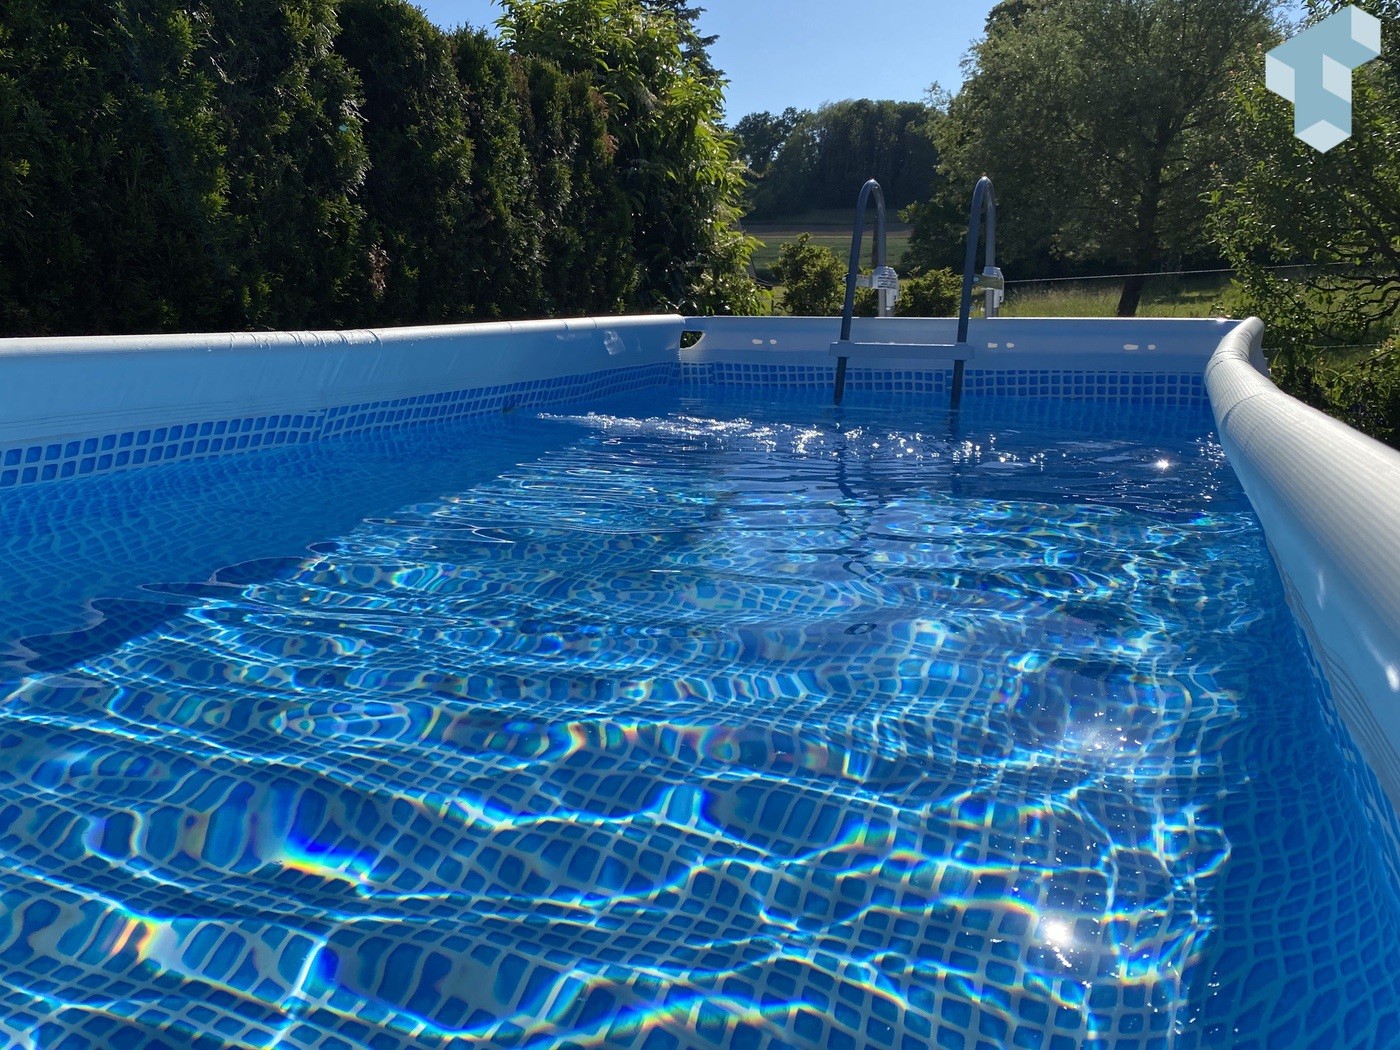 Intex Pool im Garten mit Salzwasser System betreiben: Was gibt es zu